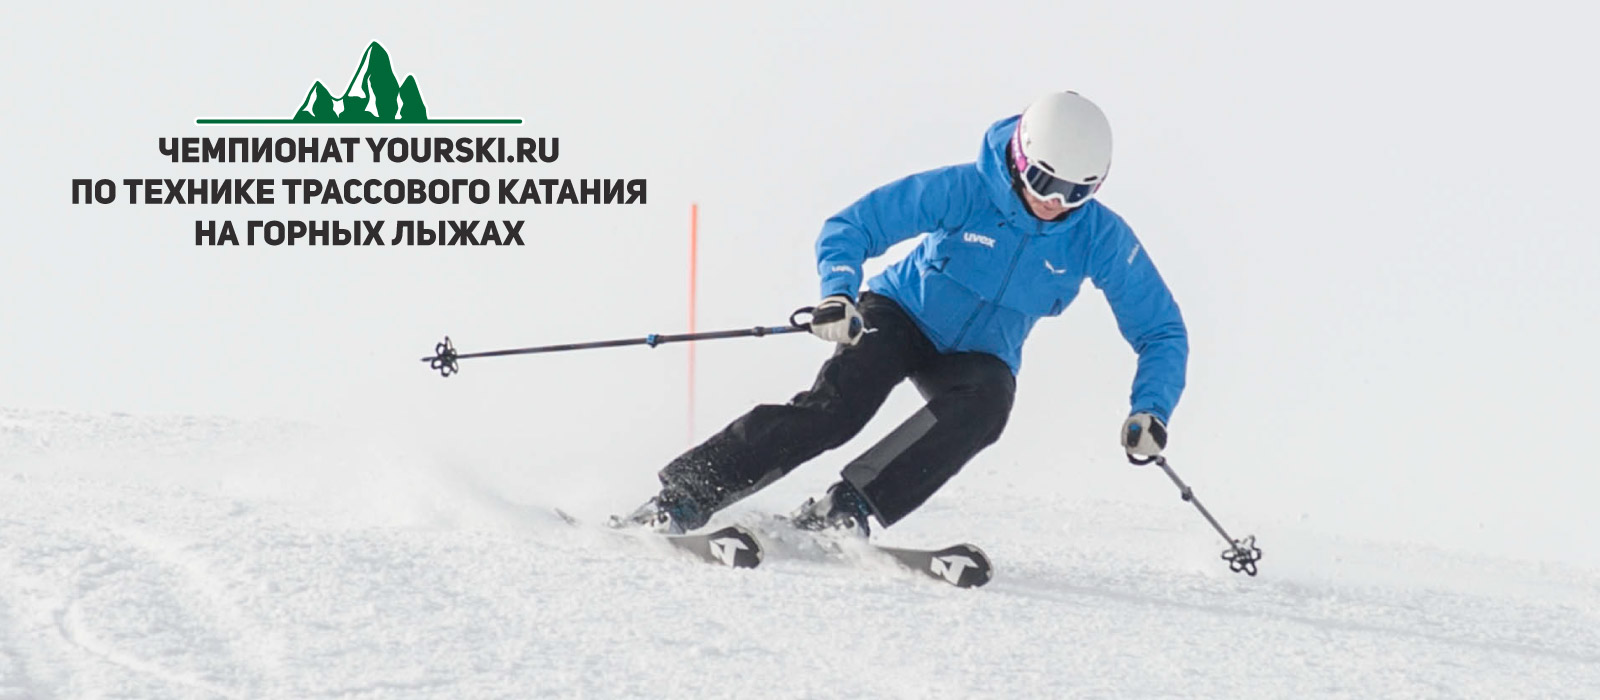 Чемпионат по технике трассового катания на горных лыжах Yourski.ru